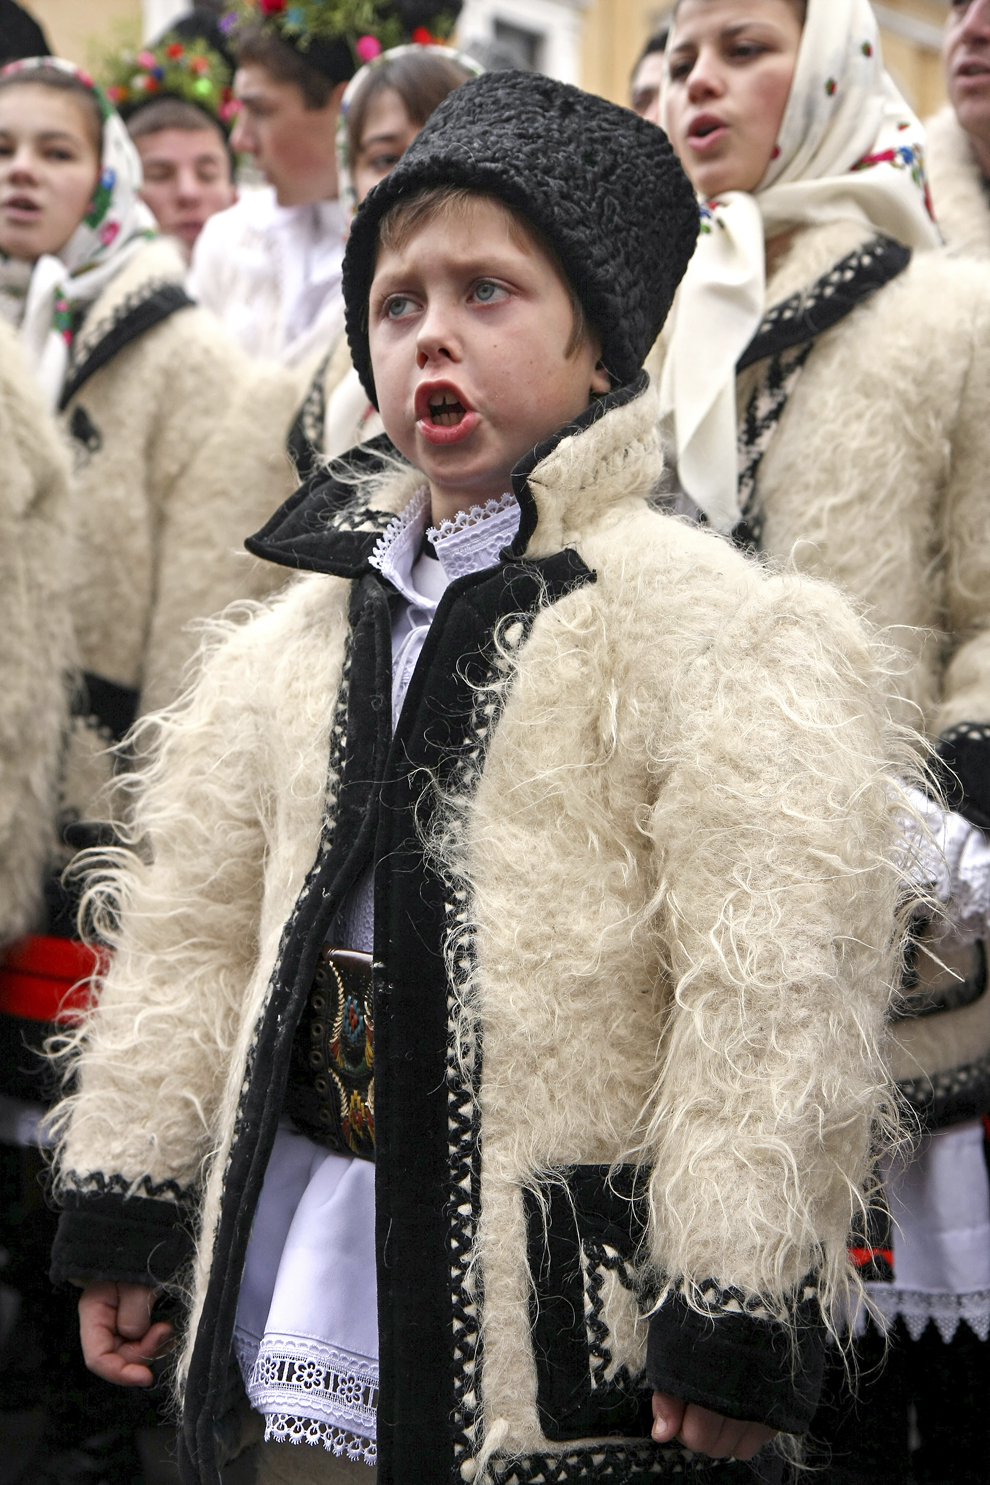 Un copil îmbrăcat în port tradiţional maramureşean, colindă cu ocazia Festivalului de Datini Marmaţia 2009, la Sighetu Marmaţiei, duminică, 27 decembrie 2009.